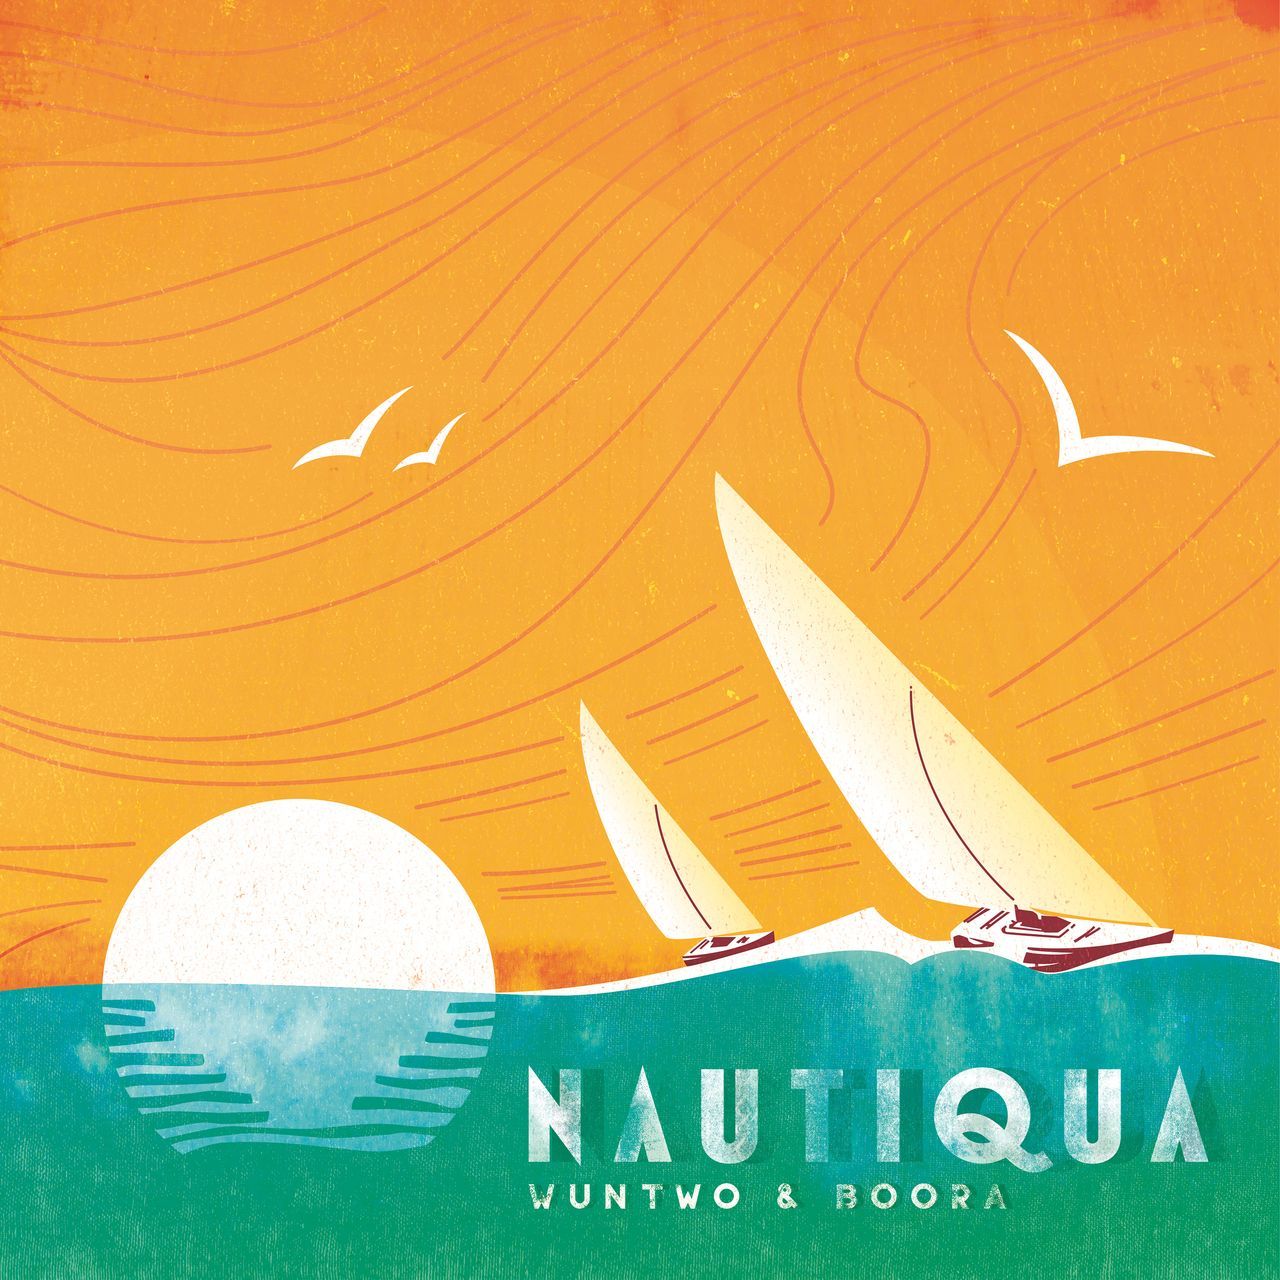 Nautiqua album art